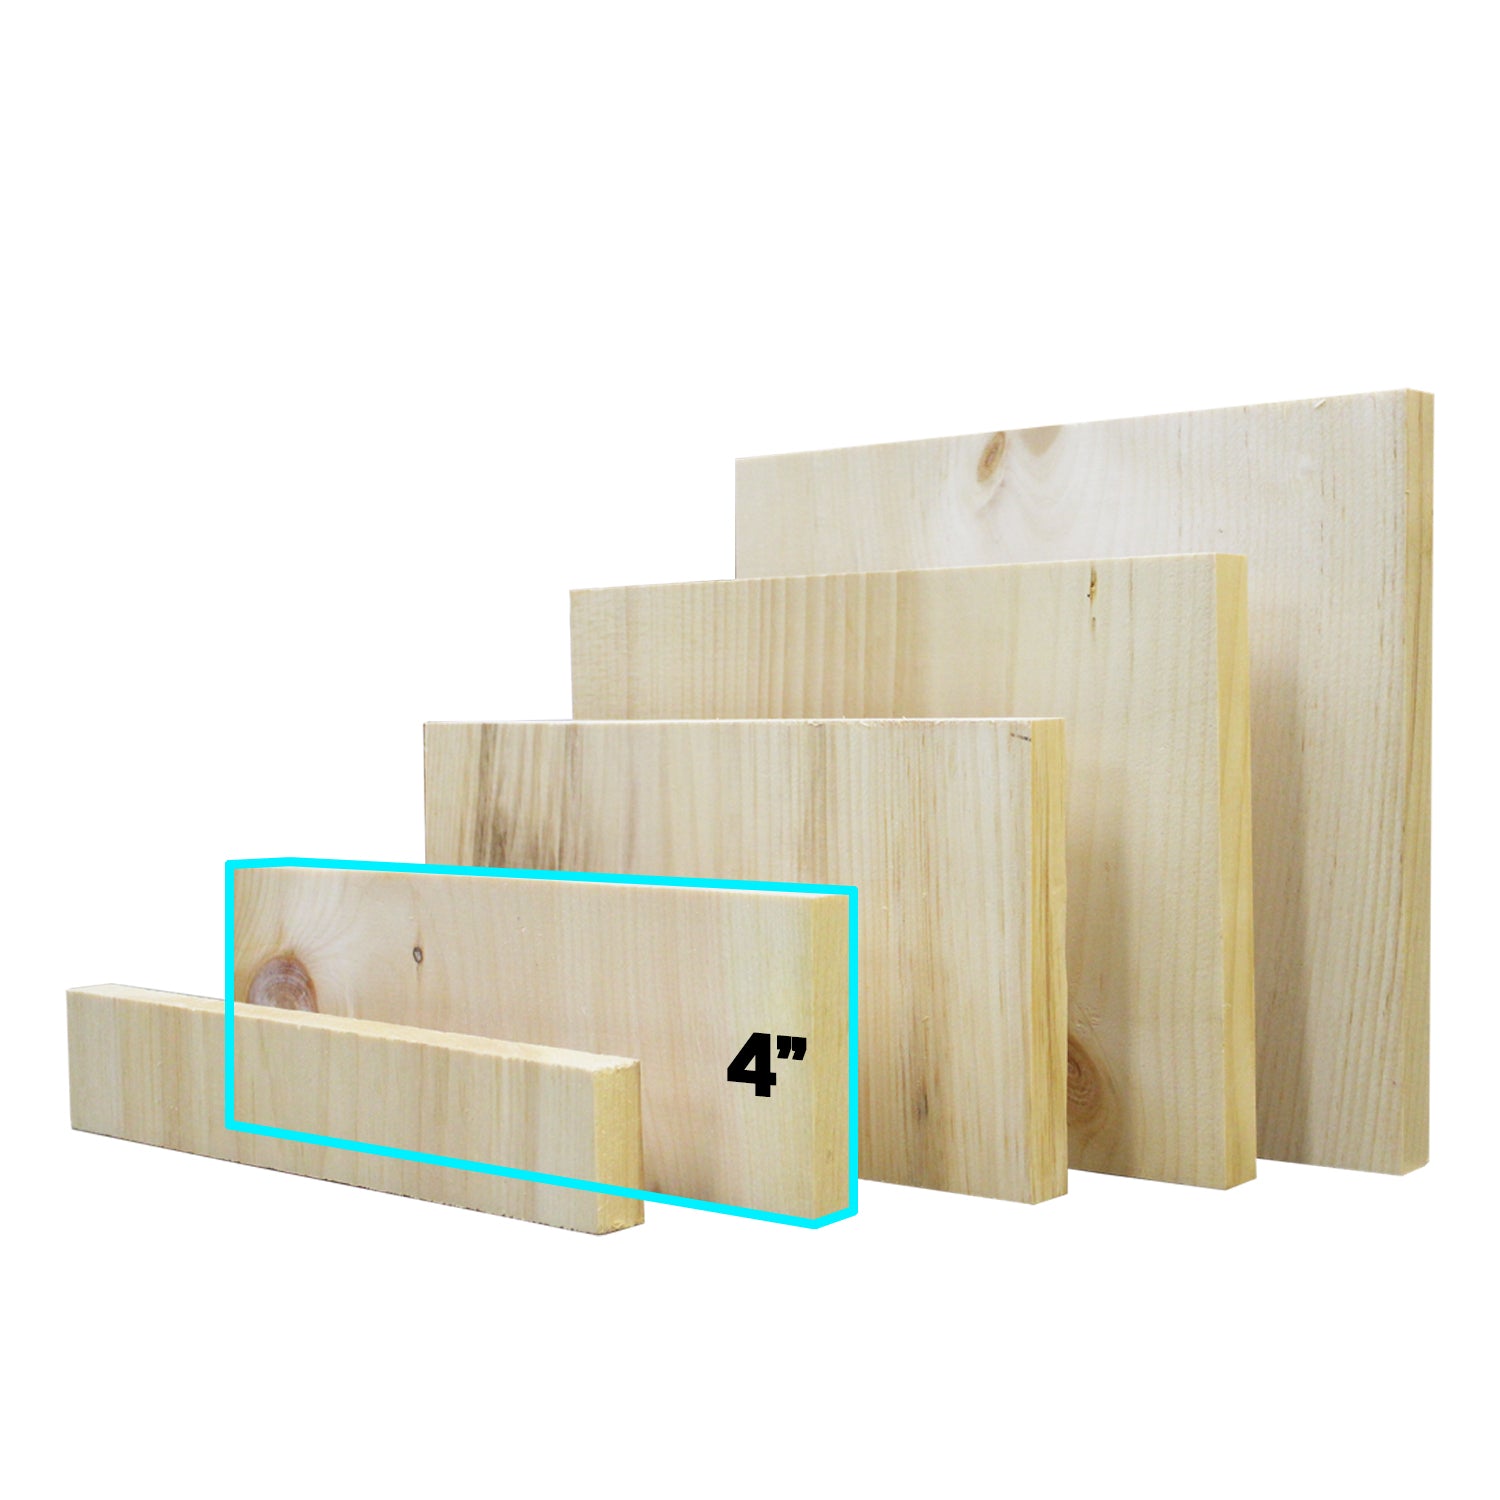 Pine Breaking Board